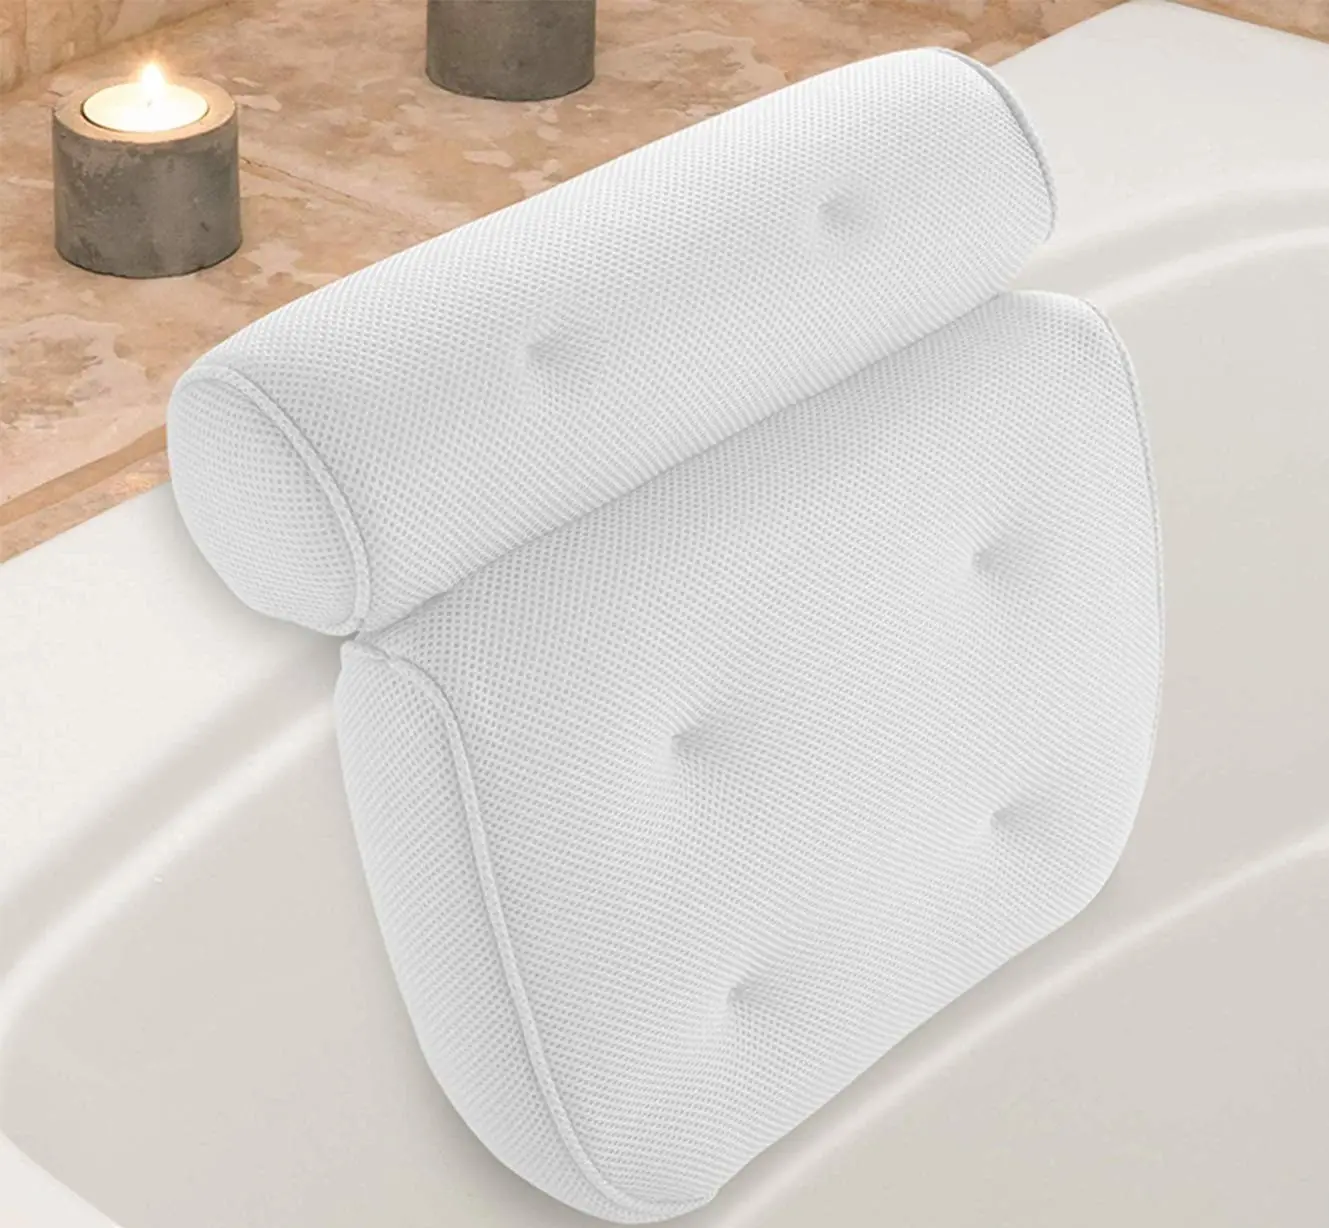 white bath pillow spa 3D mesh bath pillow with suction cup for tub in bathroom gel bath pillow